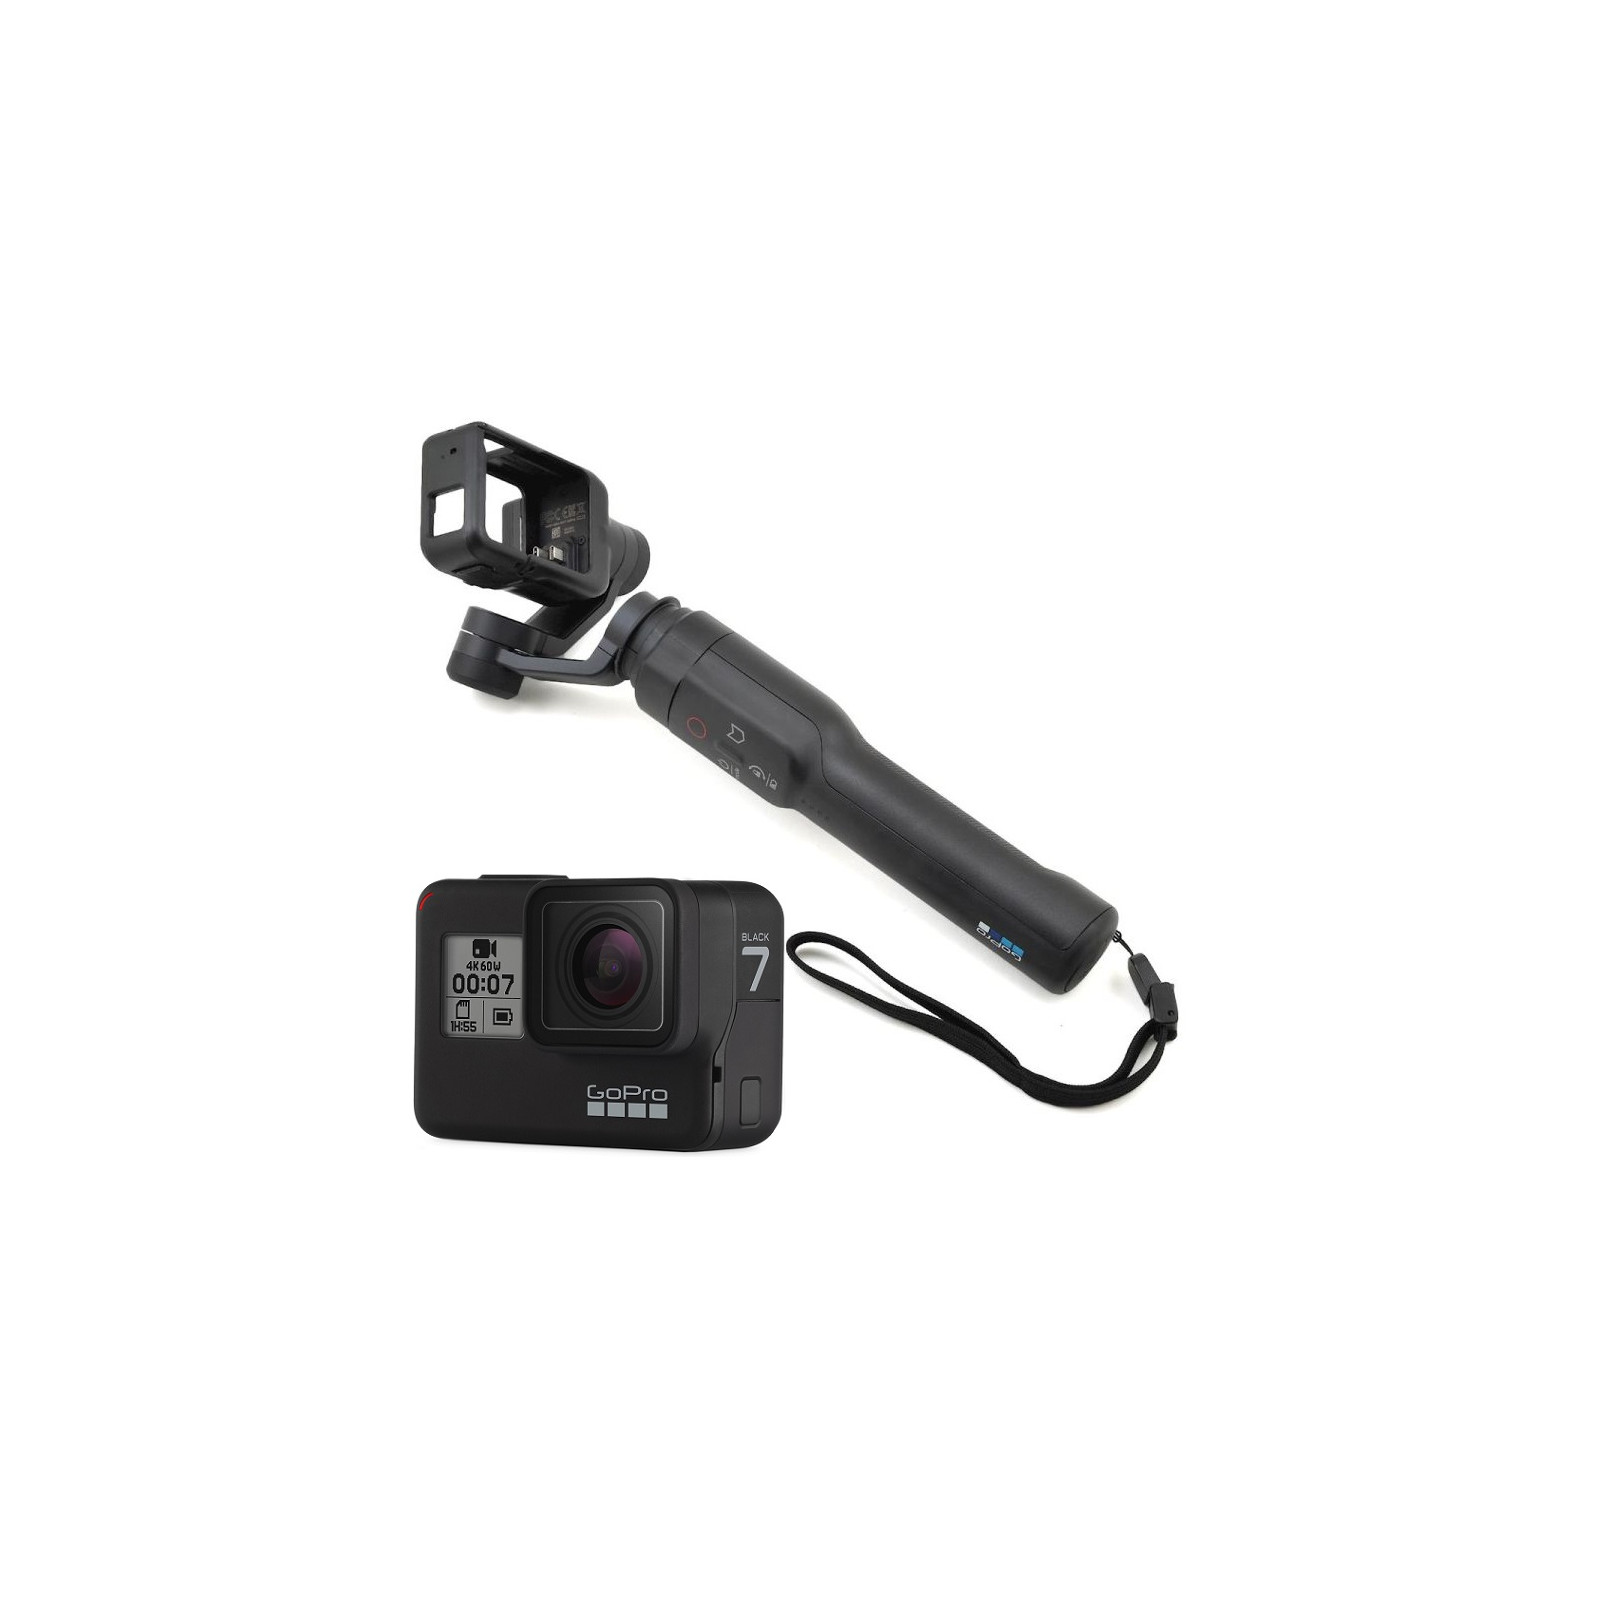 GoPro HERO 7 Black action camera with Karma Grip. Description